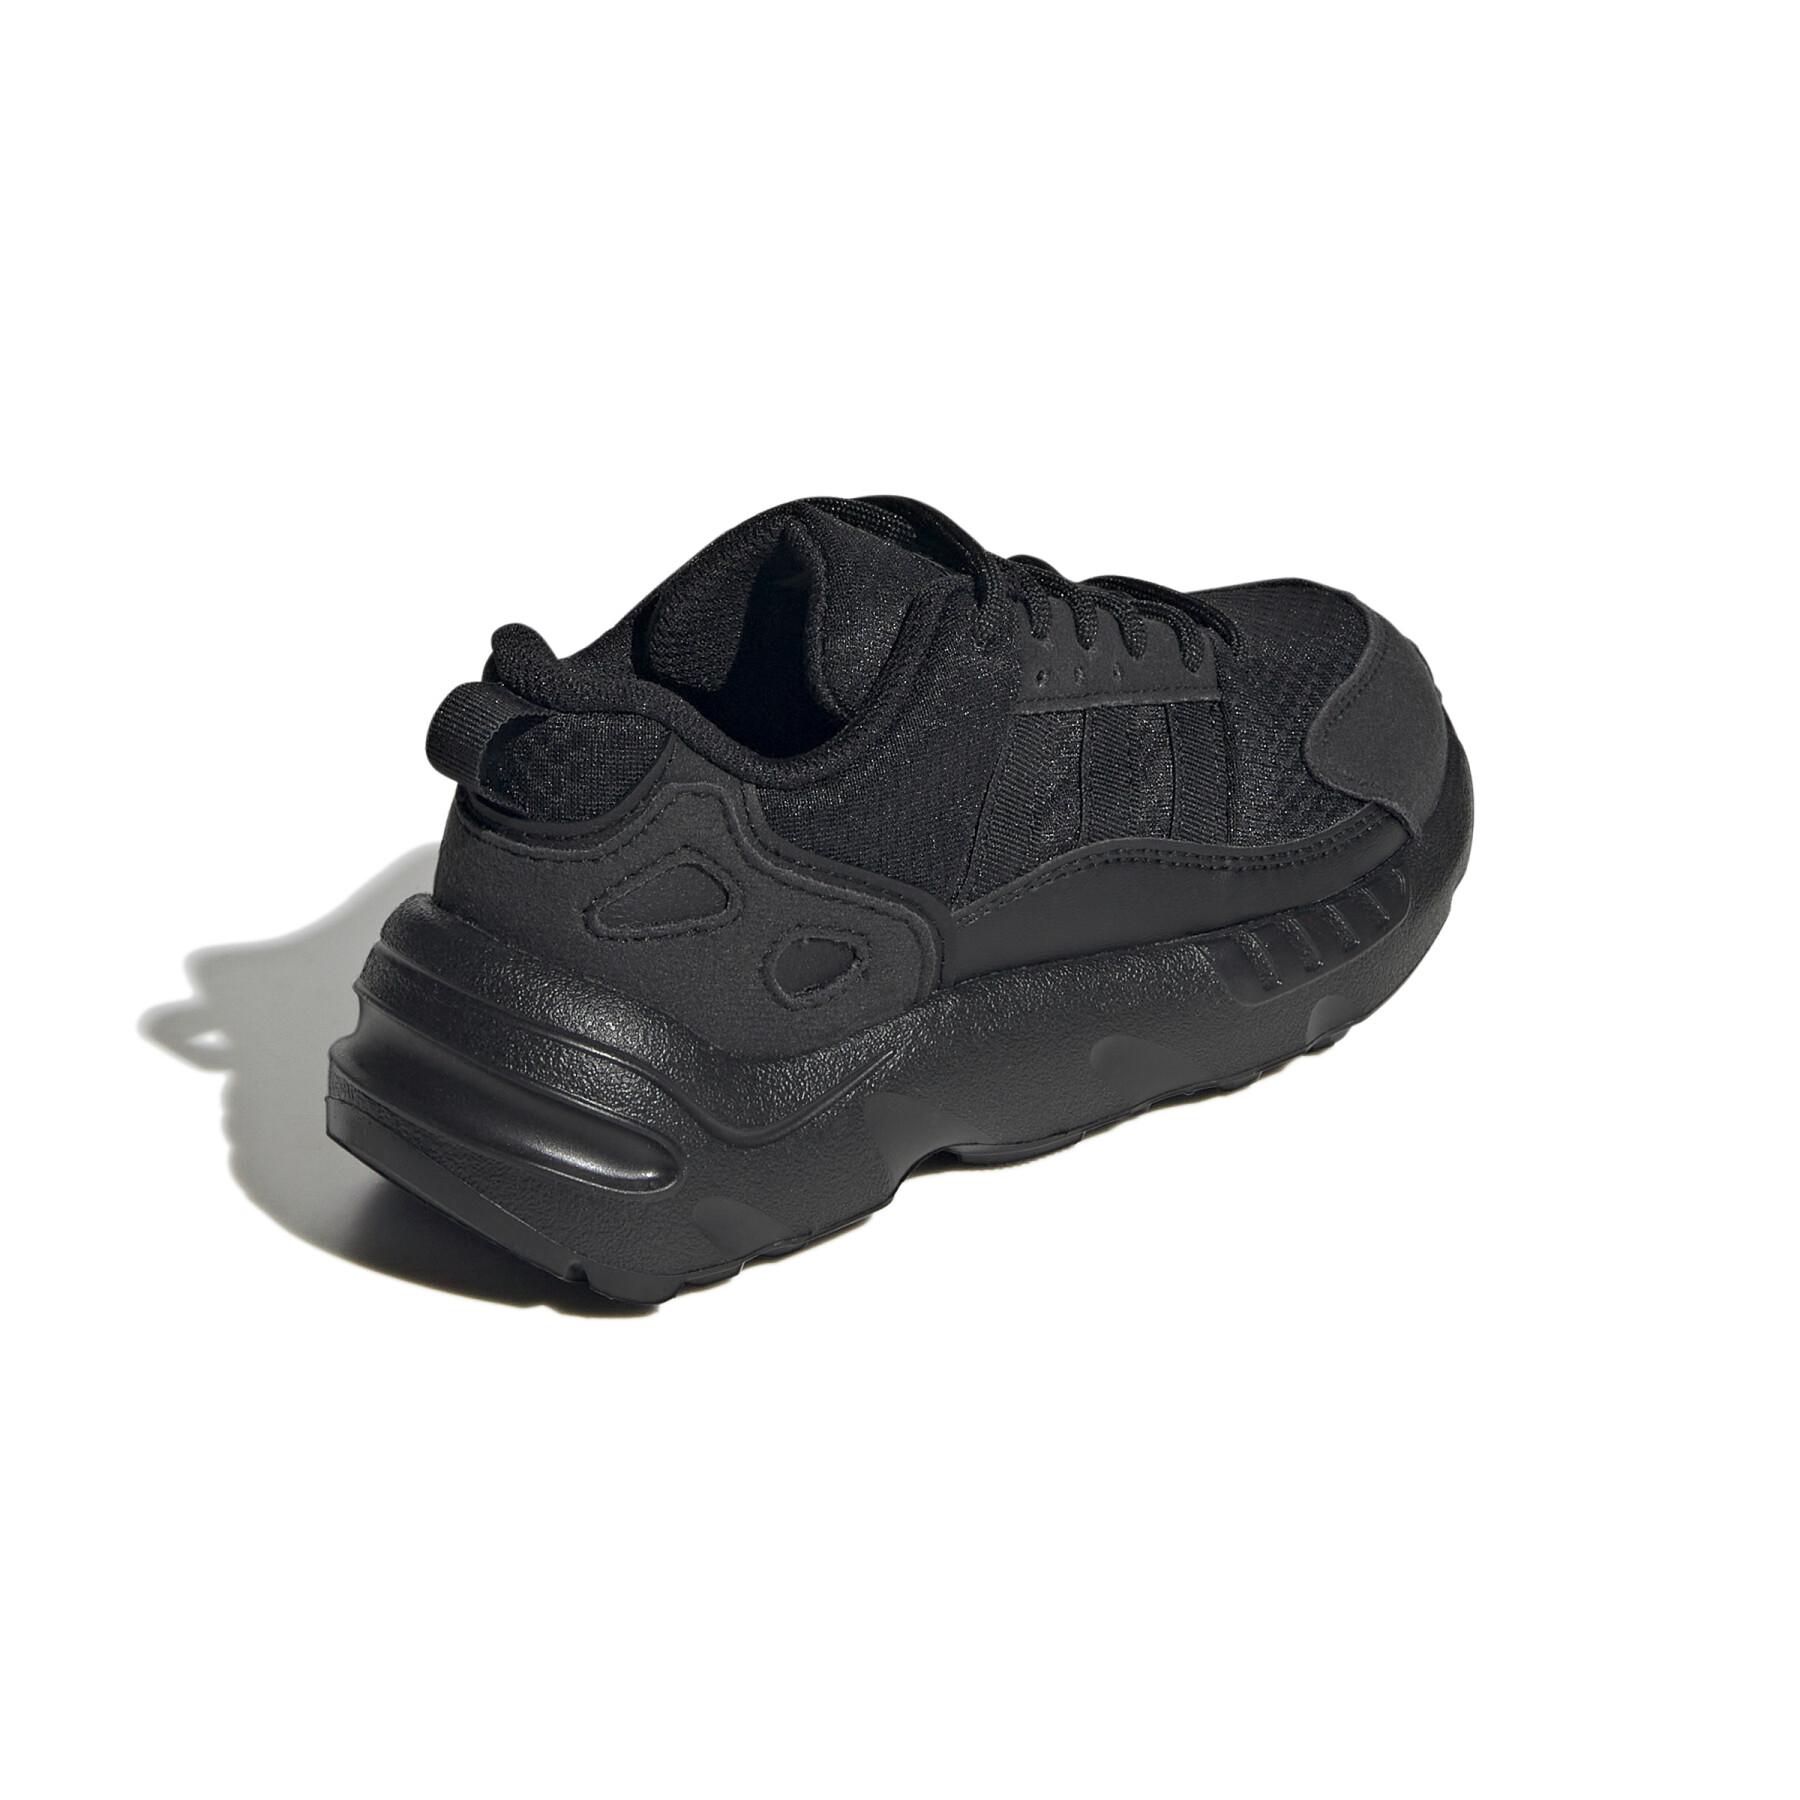 Children's sneakers adidas Originals Zx 22